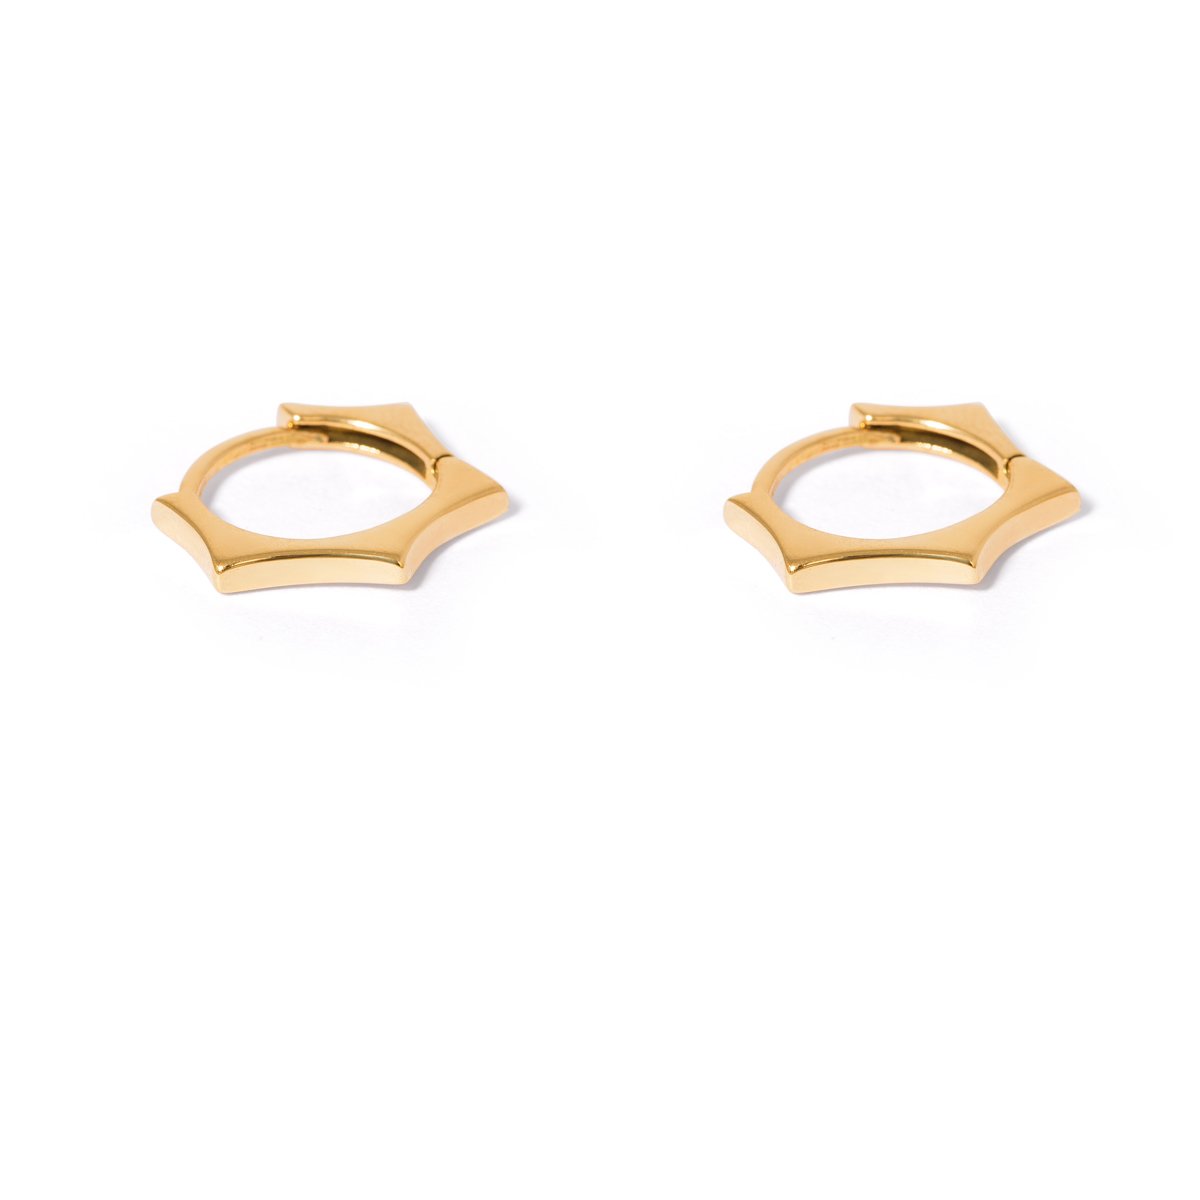 Gold pentagonal ring earrings g